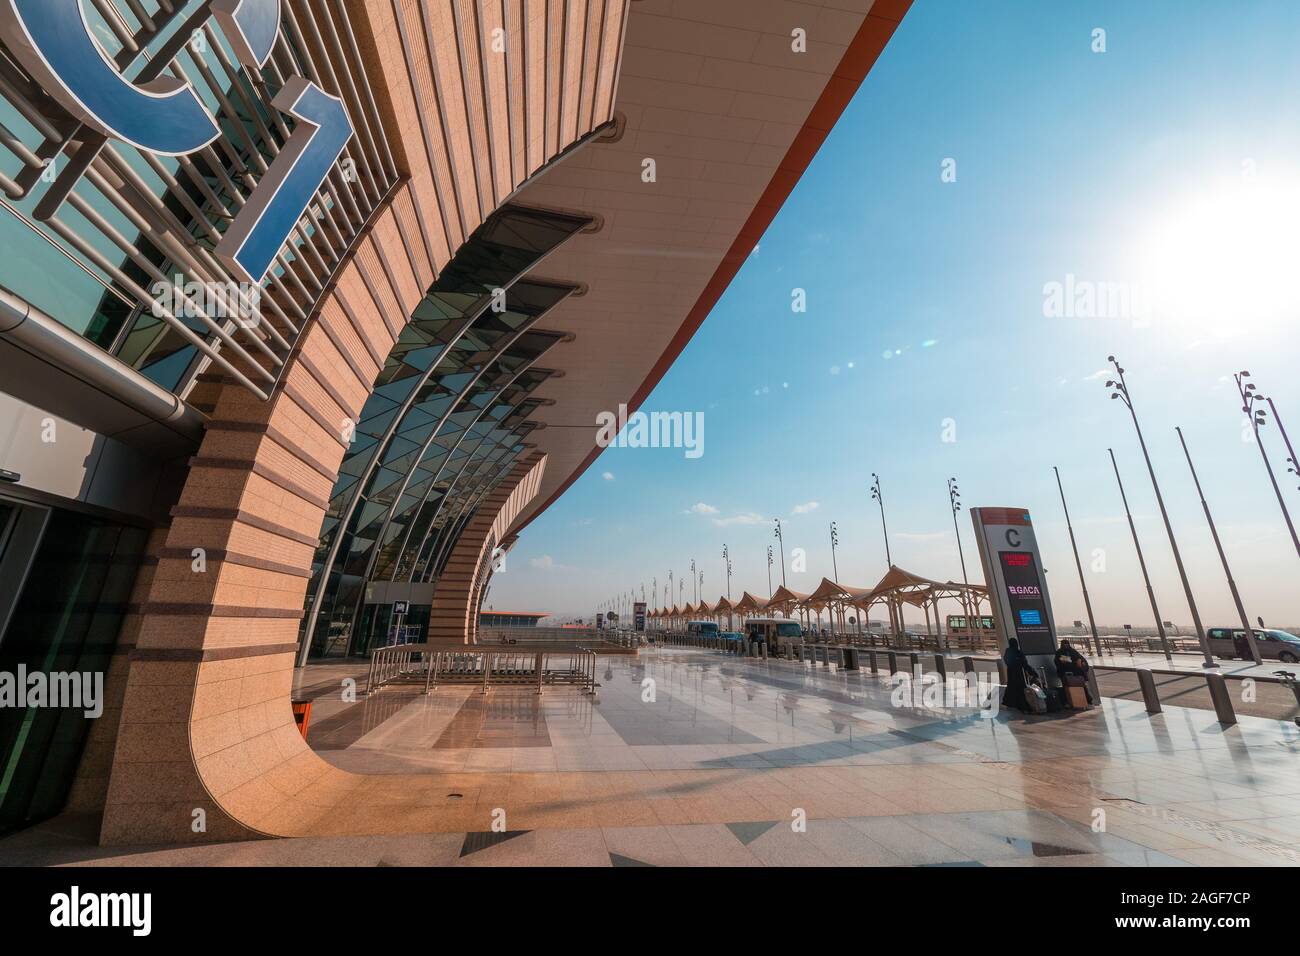 Vista exterior de la nueva Terminal 1 en el Aeropuerto Internacional Rey Abdulaziz (JED) en Jeddah, Arabia Saudí Foto de stock